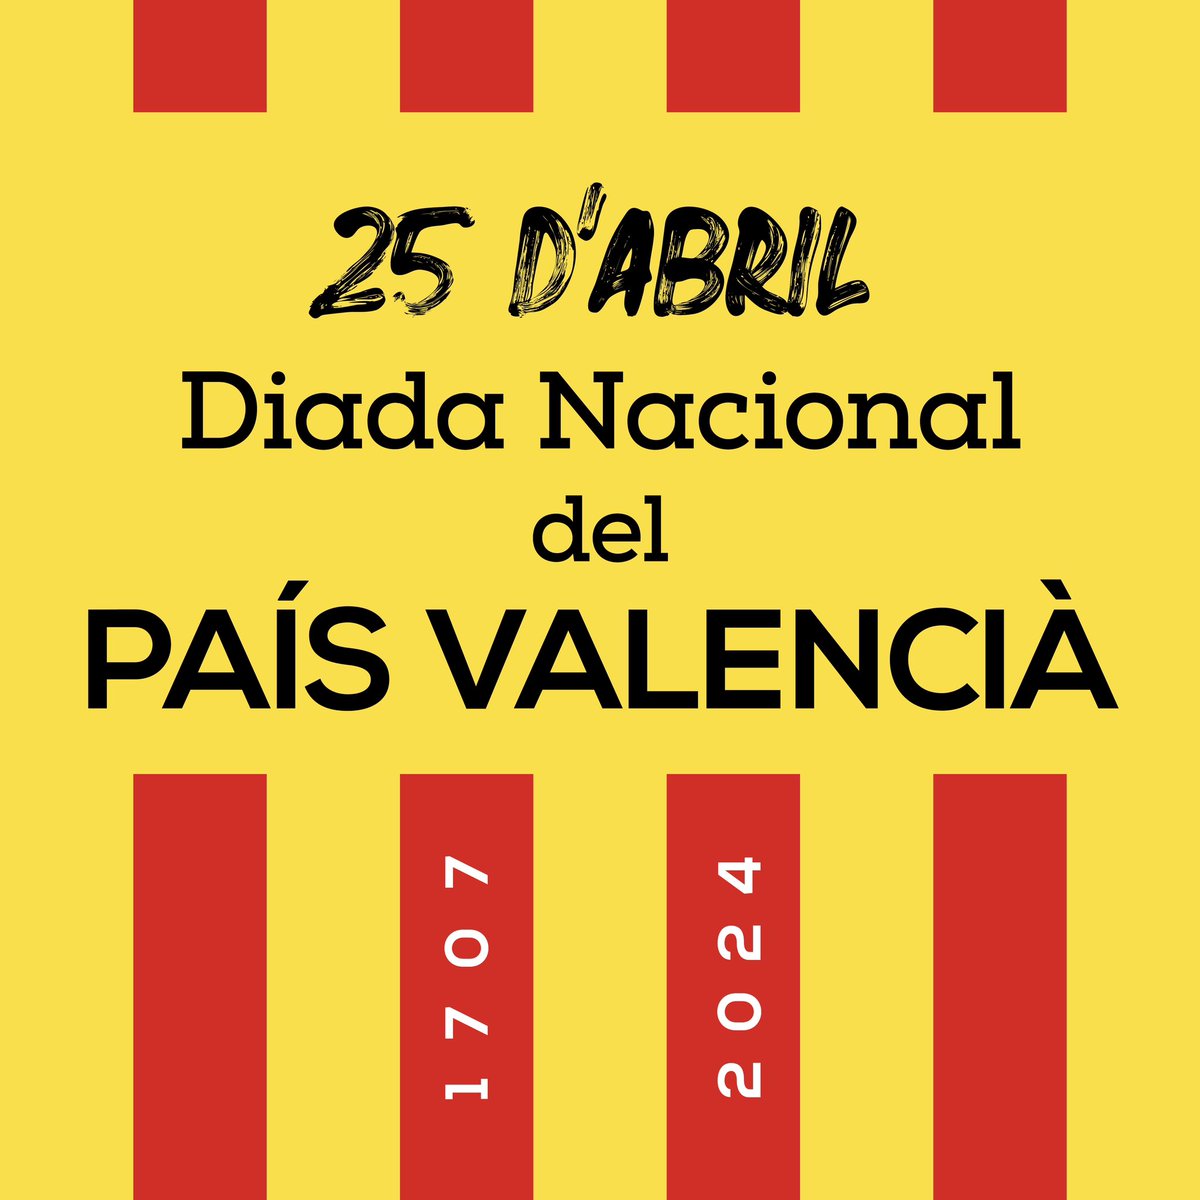 Bona Diada Nacional del País Valencià!

#DiadaNacionalPaísValencià #25dAbril #PaísValencià